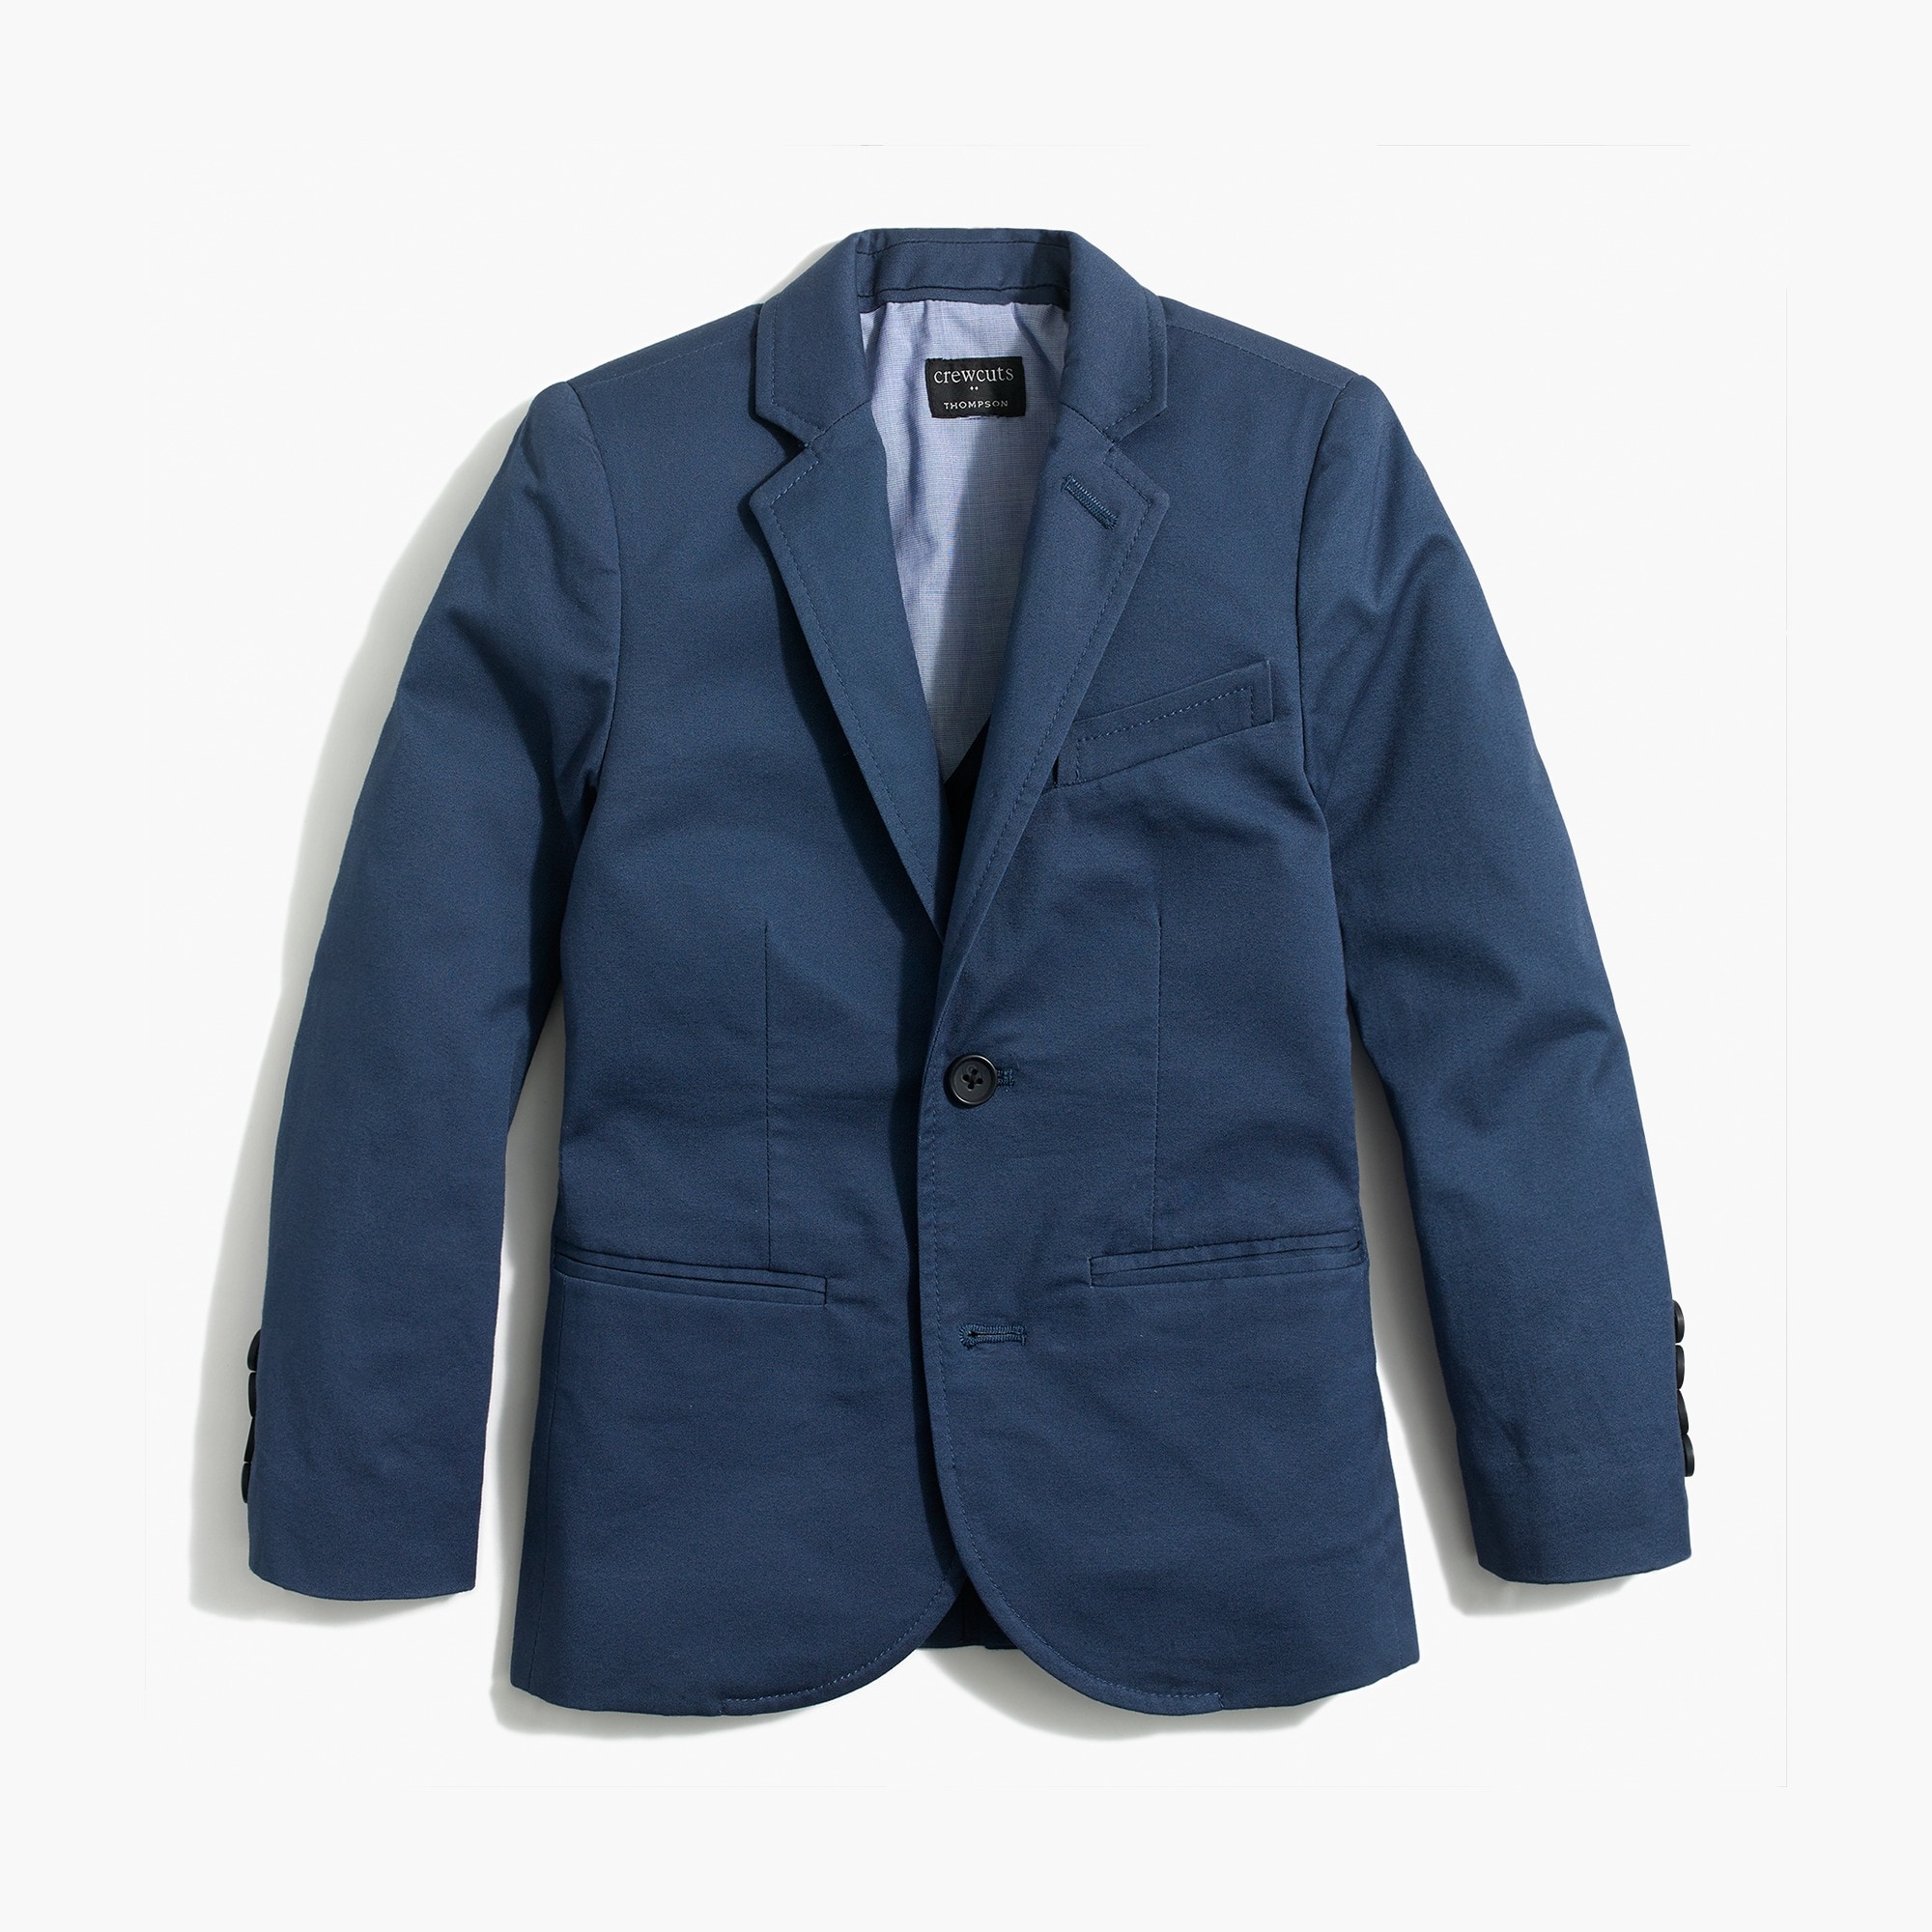 J.Crew Factory: Boys' Thompson Suit Jacket In Flex Khaki